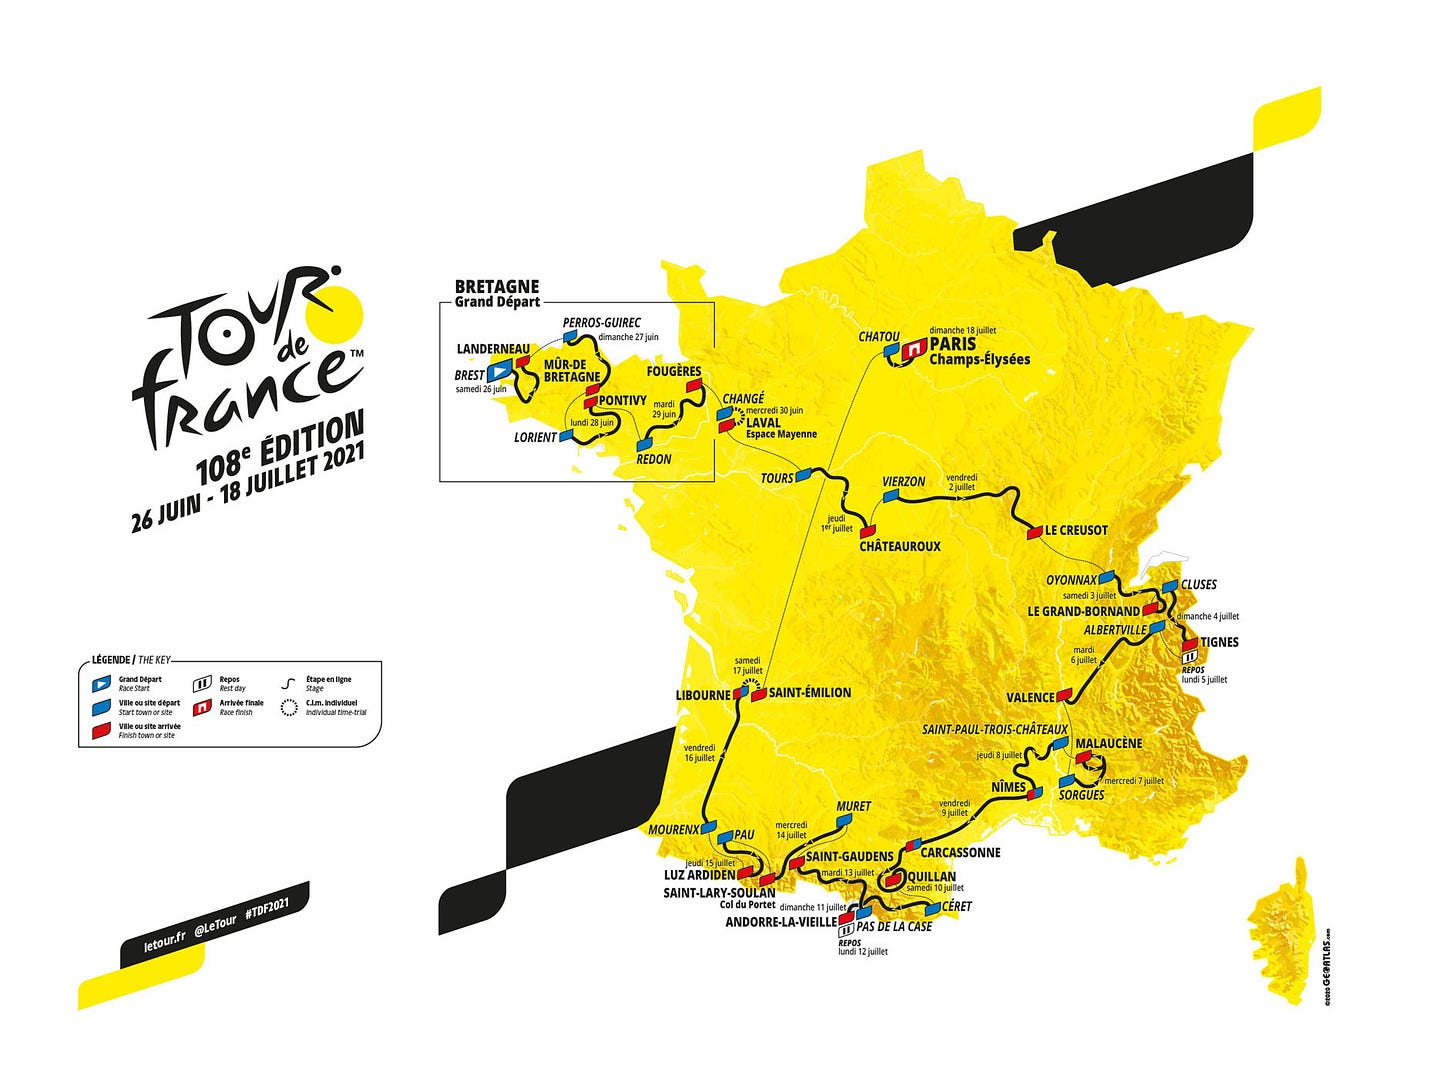 Tour Francia: Recorrido 2021, perfiles y equipos - Ciclo21